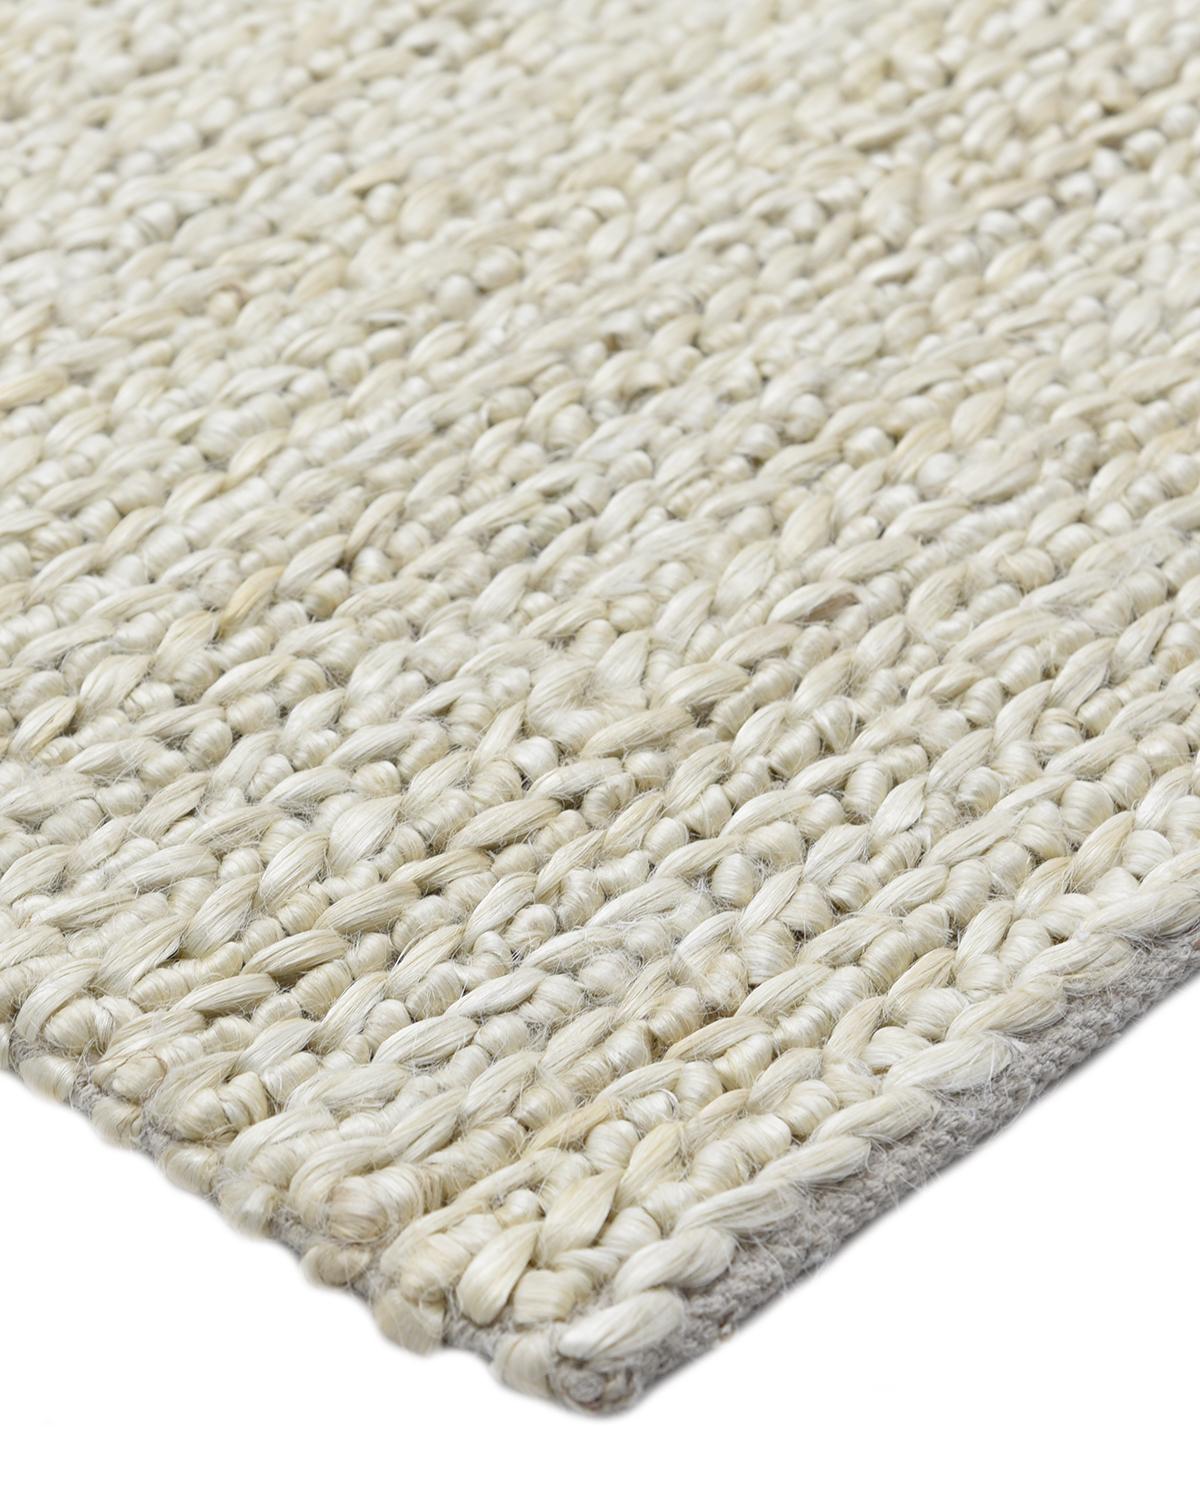 Faisant le lien entre le traditionnel et le moderne, la collection Transitional Jute propose des tapis qui illustrent la polyvalence. Doux sous les pieds grâce à une agréable combinaison de textures, ces tapis d'inspiration vintage confèrent une